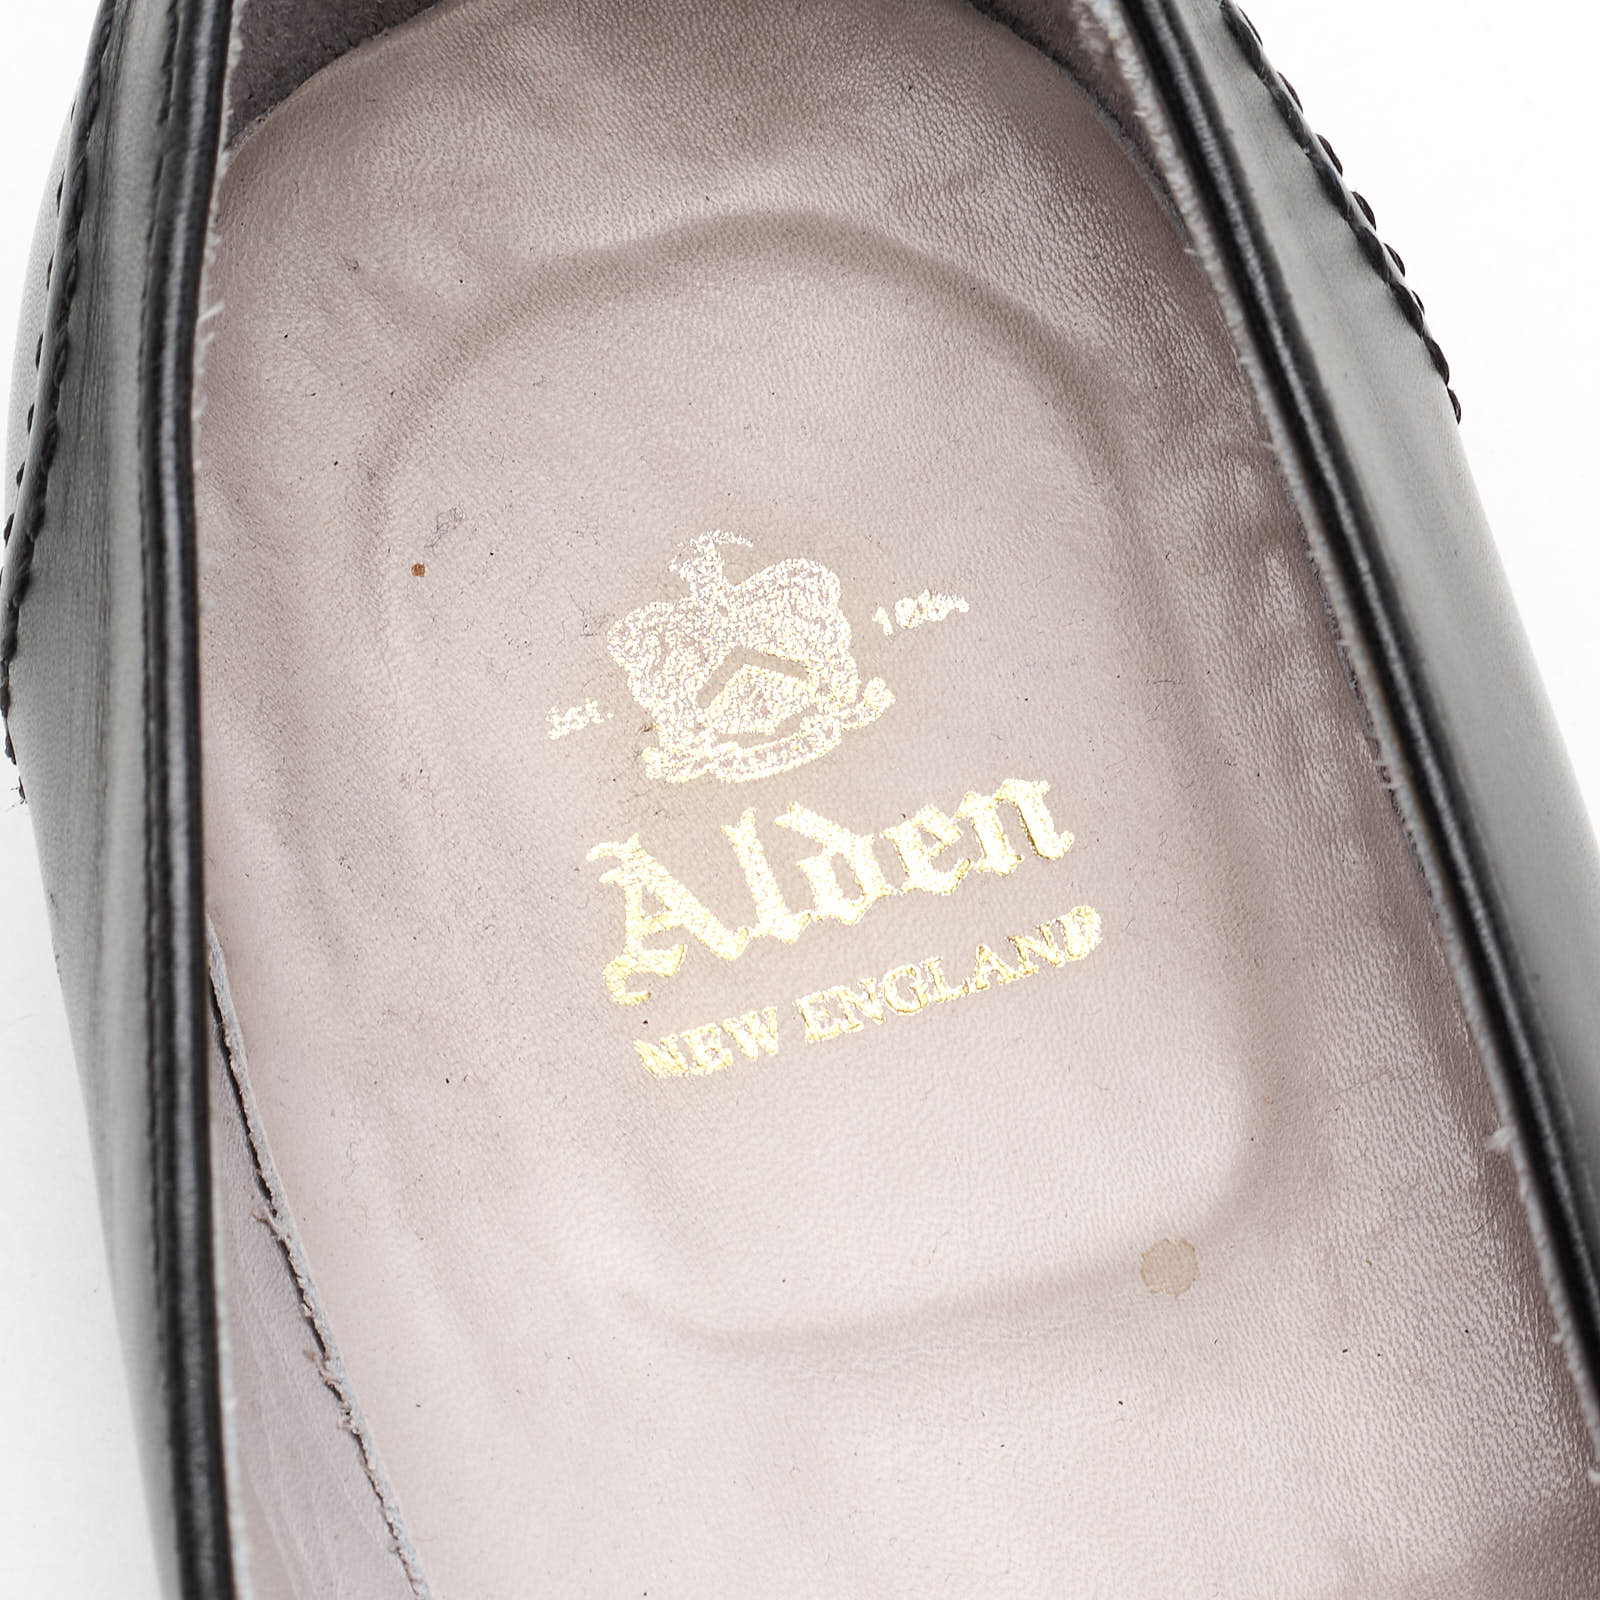 ALDEN Black Calfskin Leather Penny Loafer Dress Shoes US 9B/D